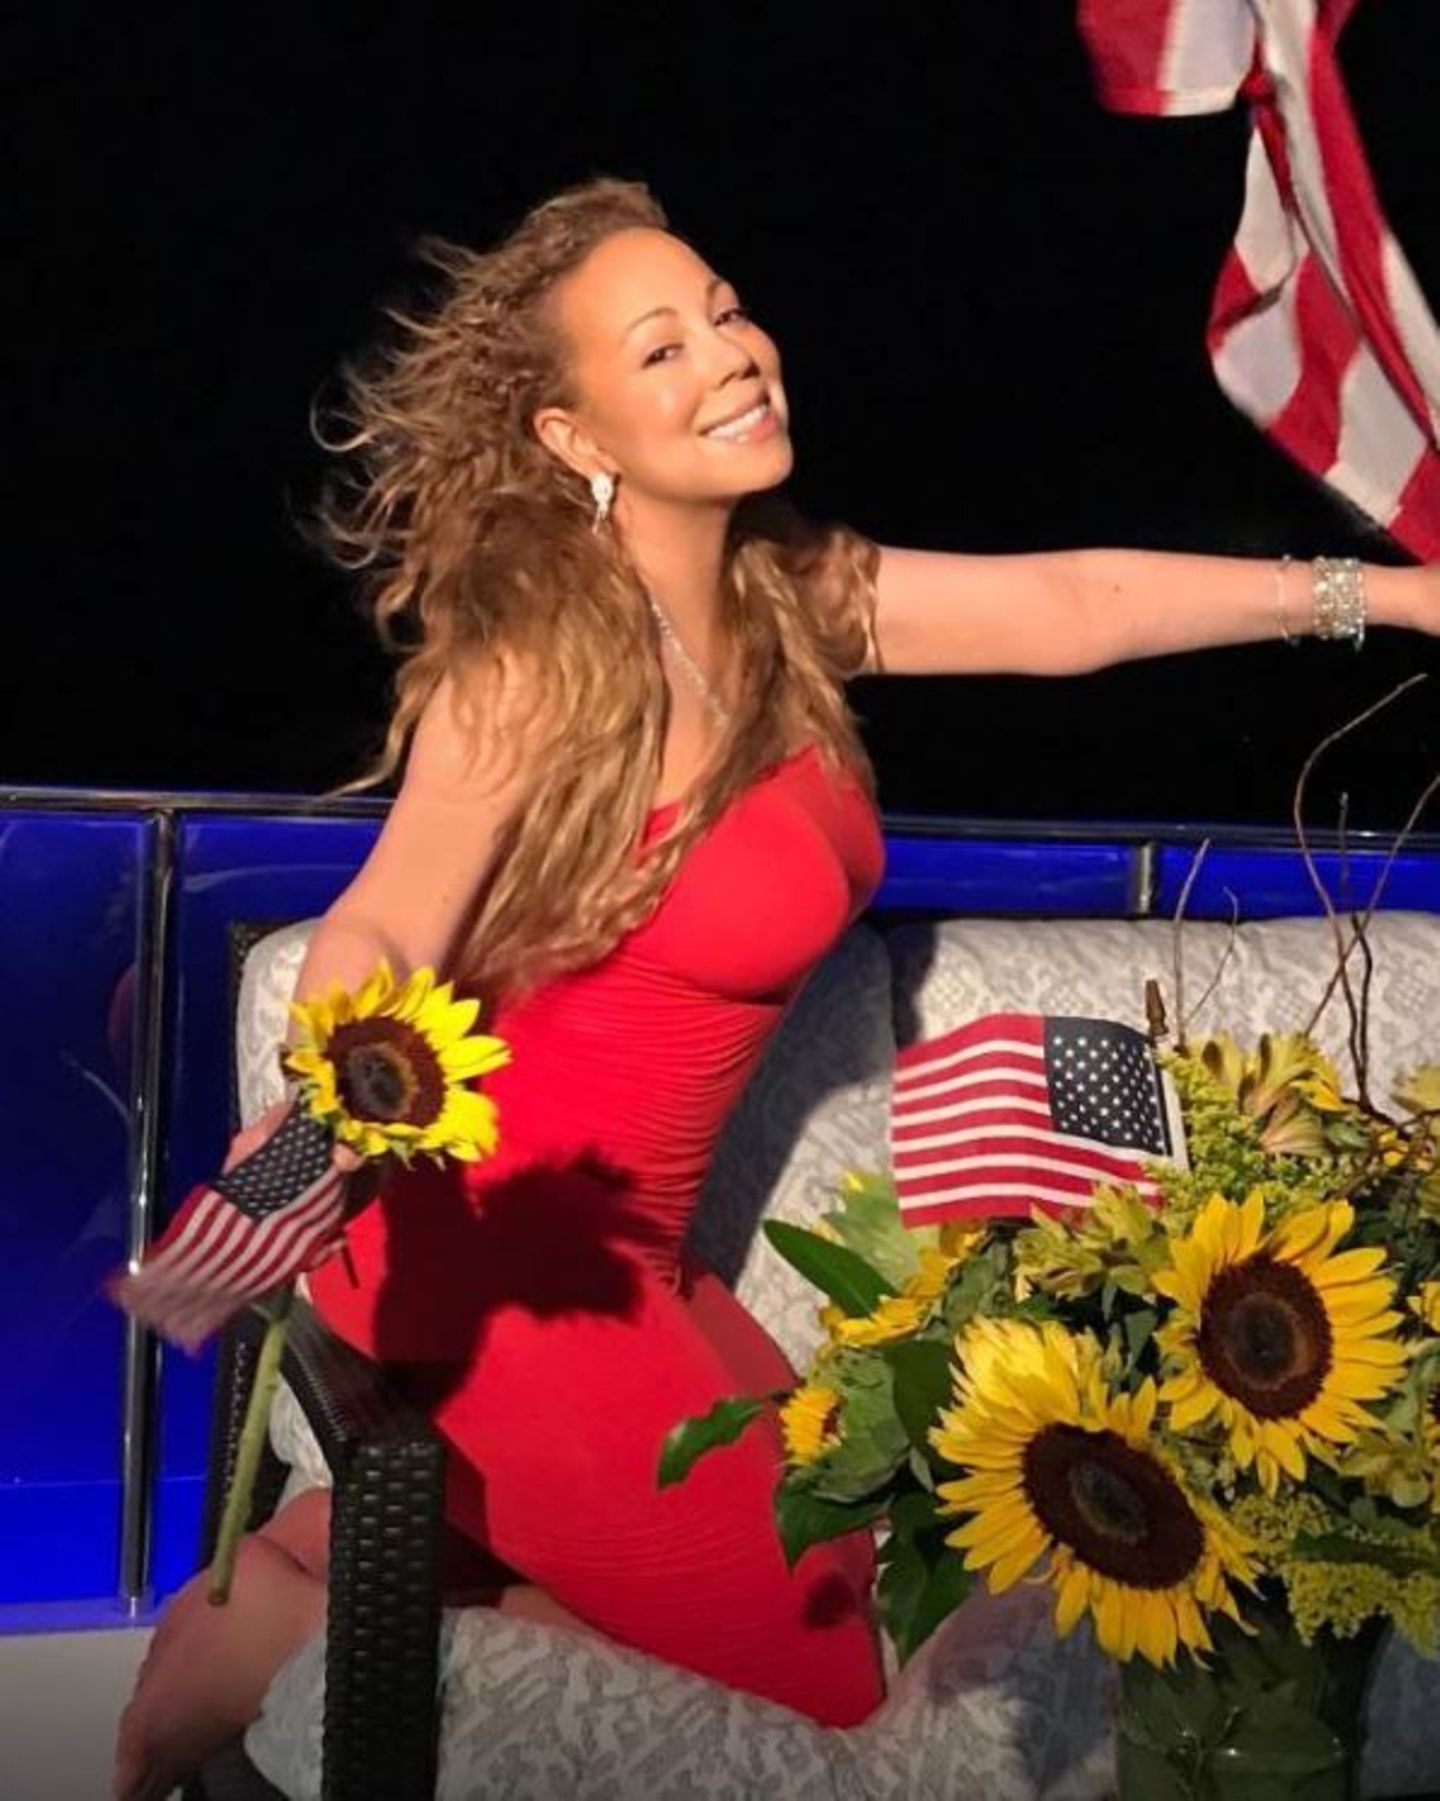 Mit Sonnenblumen und US-Flaggen dekoriert, wünscht Mariah Carey einen frohen Unabhängigkeitstag.